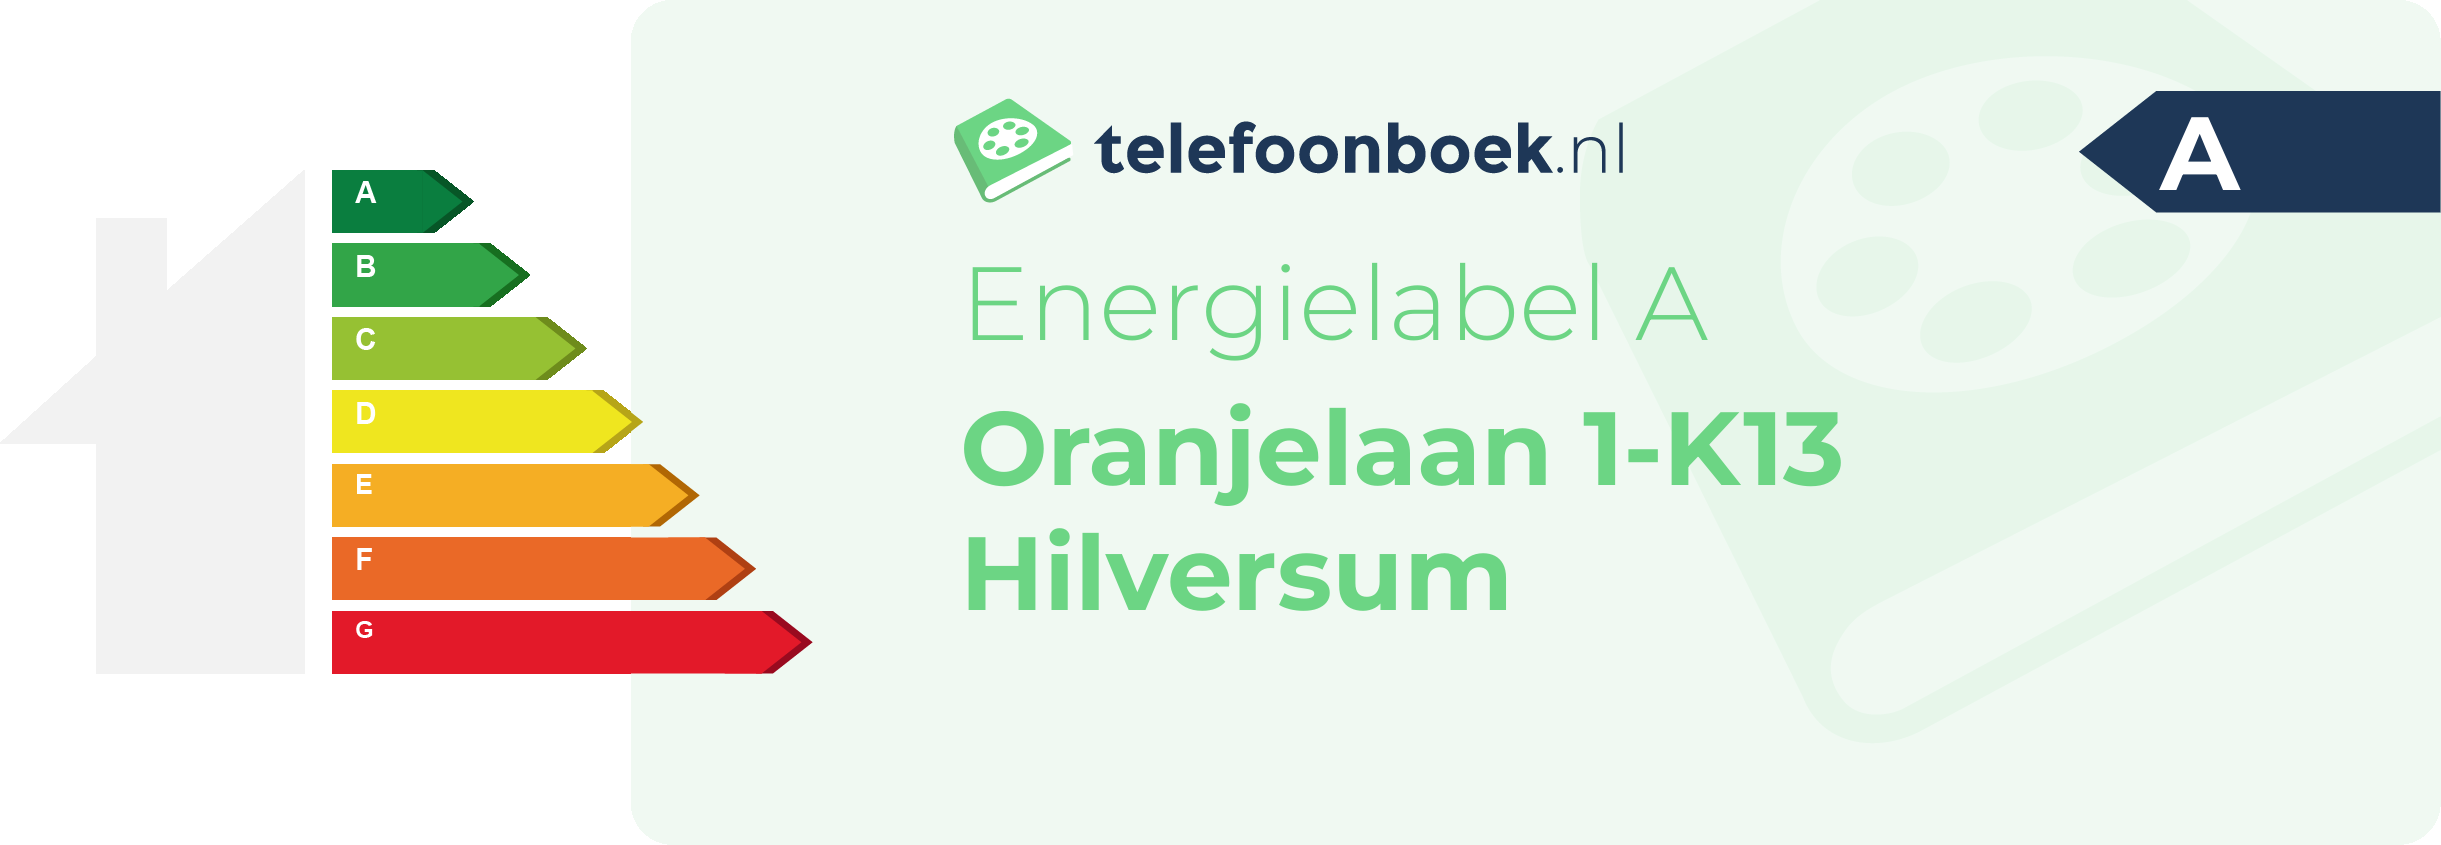 Energielabel Oranjelaan 1-K13 Hilversum